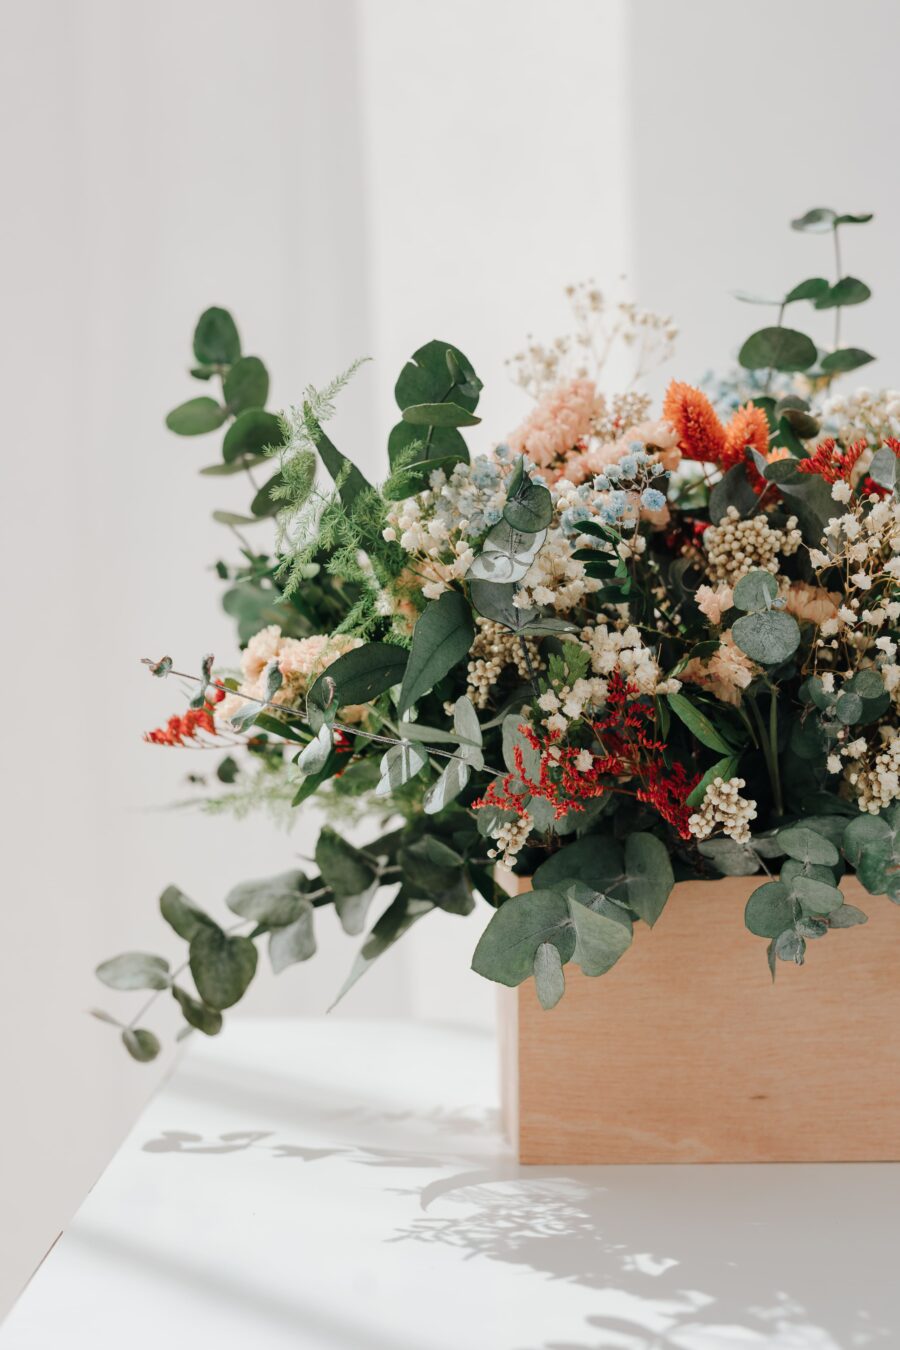 Haz tu pedido de flores preservadas hoy mismo y disfruta de la conveniencia de recibir tus arreglos florales directamente en tu hogar. ¡Añade un toque de frescura y belleza a cualquier espacio con nuestras flores preservadas